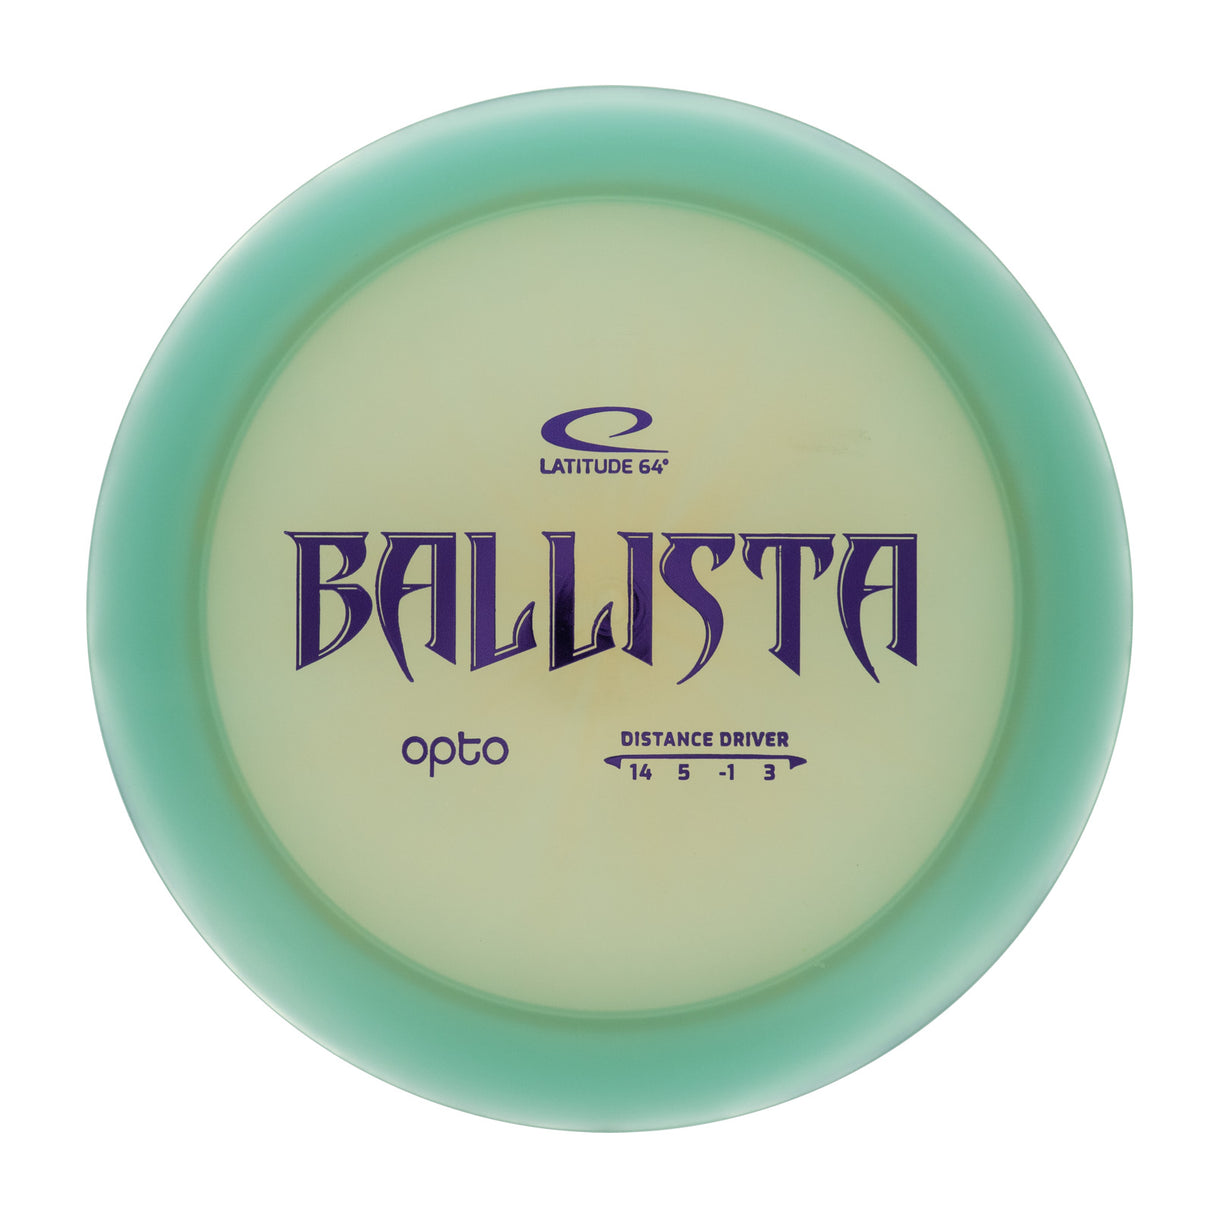 Latitude 64 Ballista - Opto 175g | Style 0001